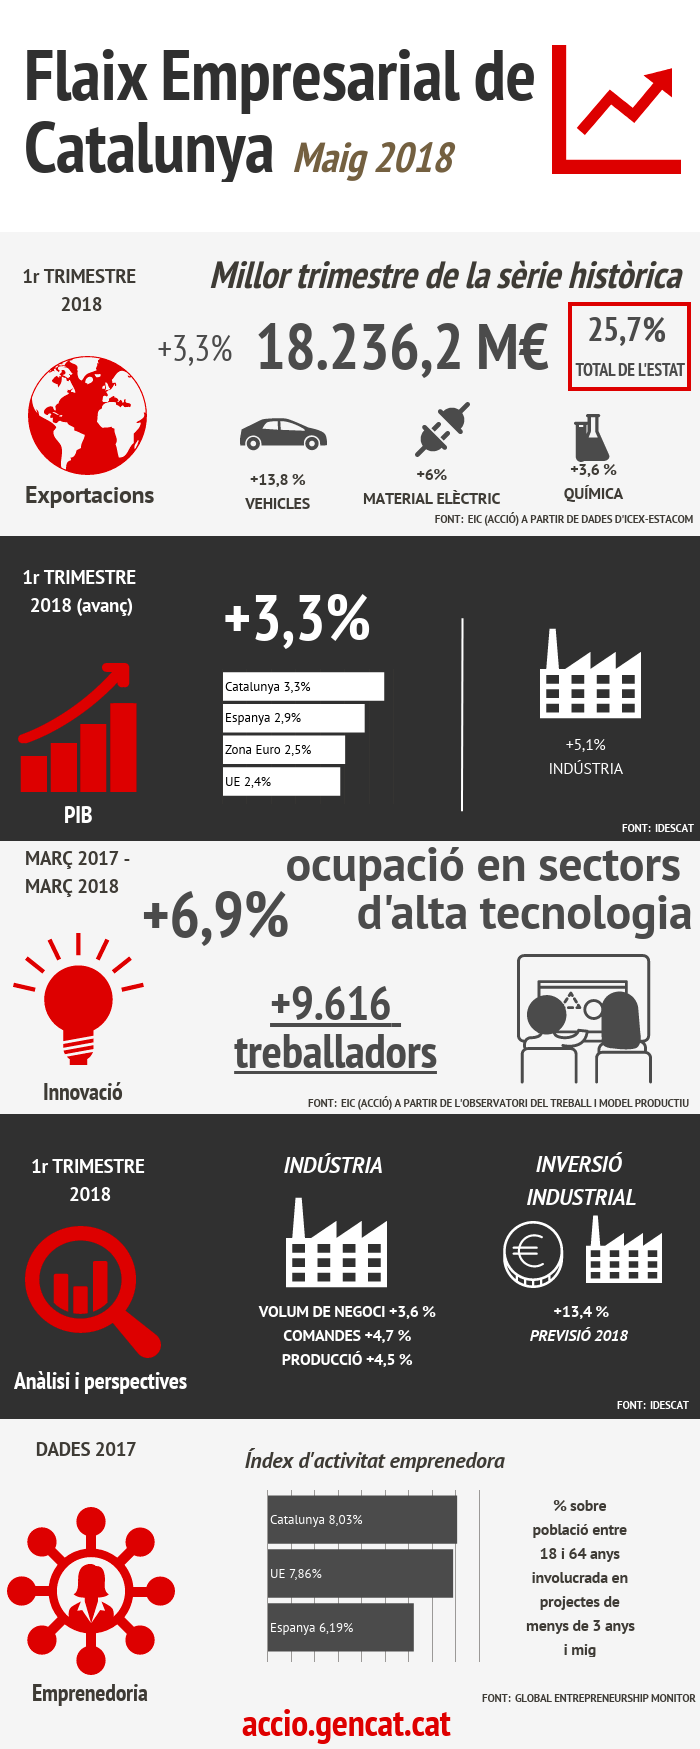 Infografia sobre el flaix empresarial de Catalunya del mes de maig de 2018